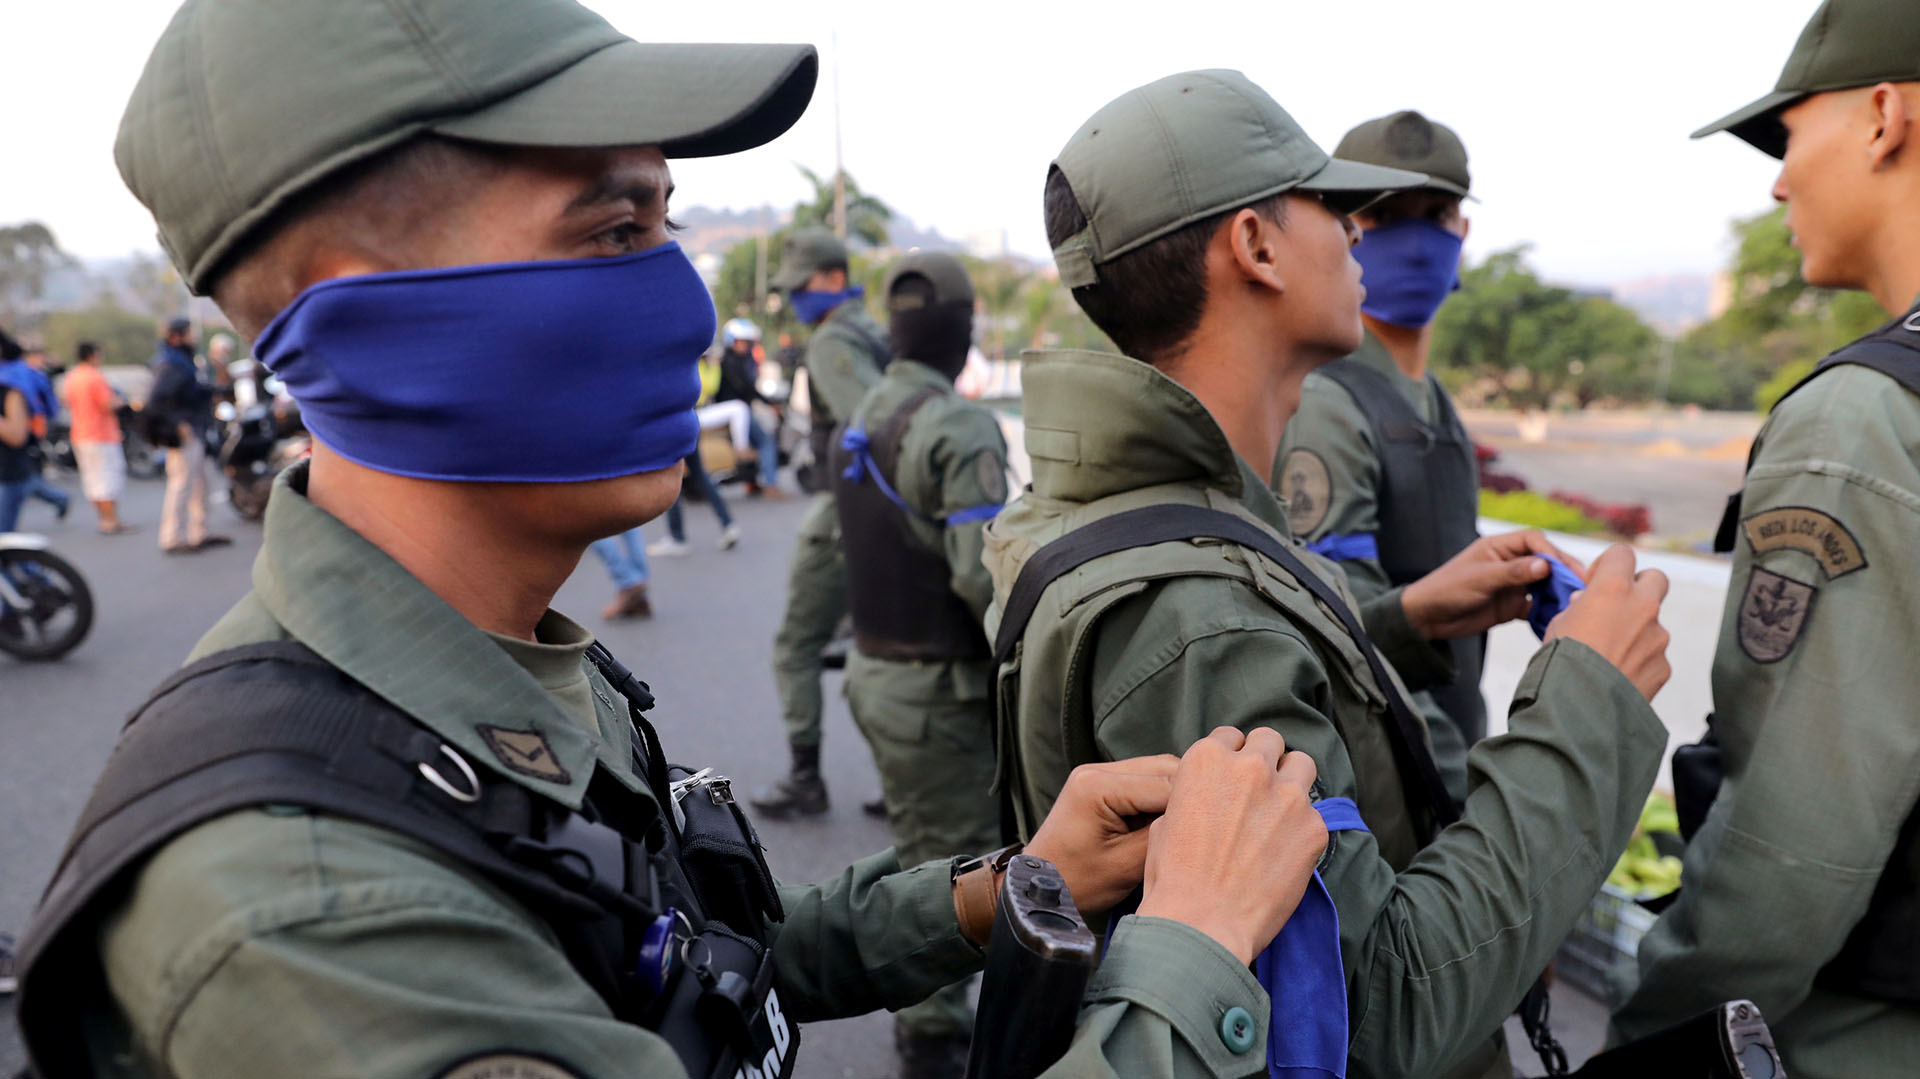 Militares con una cinta azul en el brazo cerca de la Base Aérea “La Carlota” en Caracas, Venezuela, el 30 de abril de 2019. REUTERS/Manaure Quintero